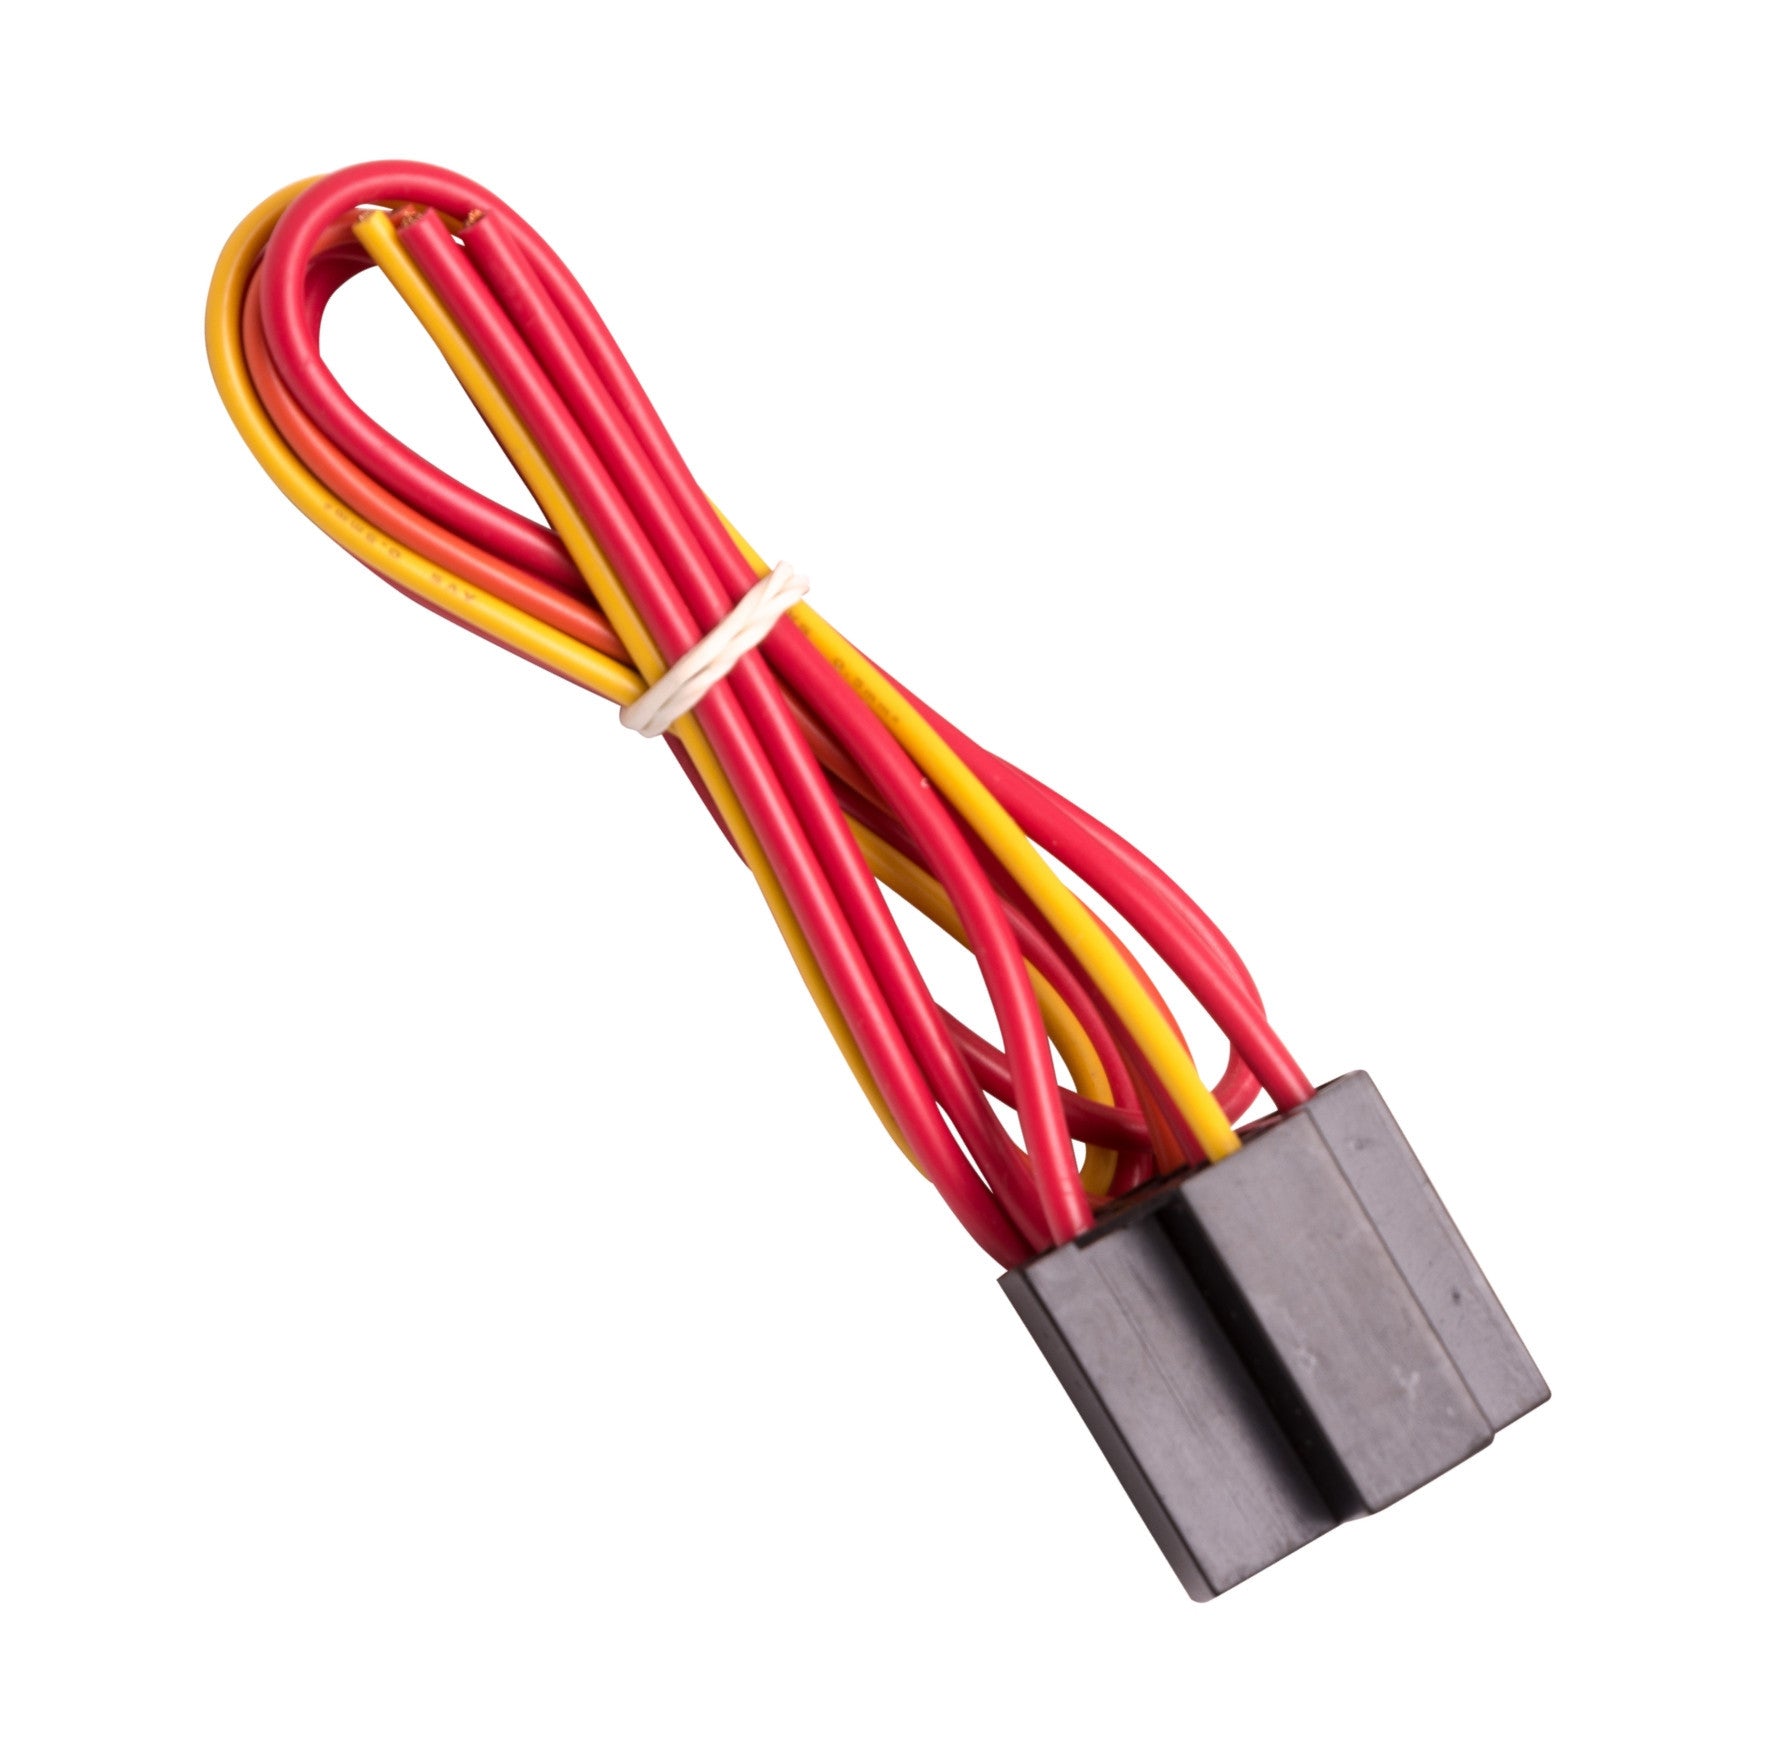 Soquete único de 12 volts e chicote elétrico para relé de dupla projeção (SPDT) Product Image